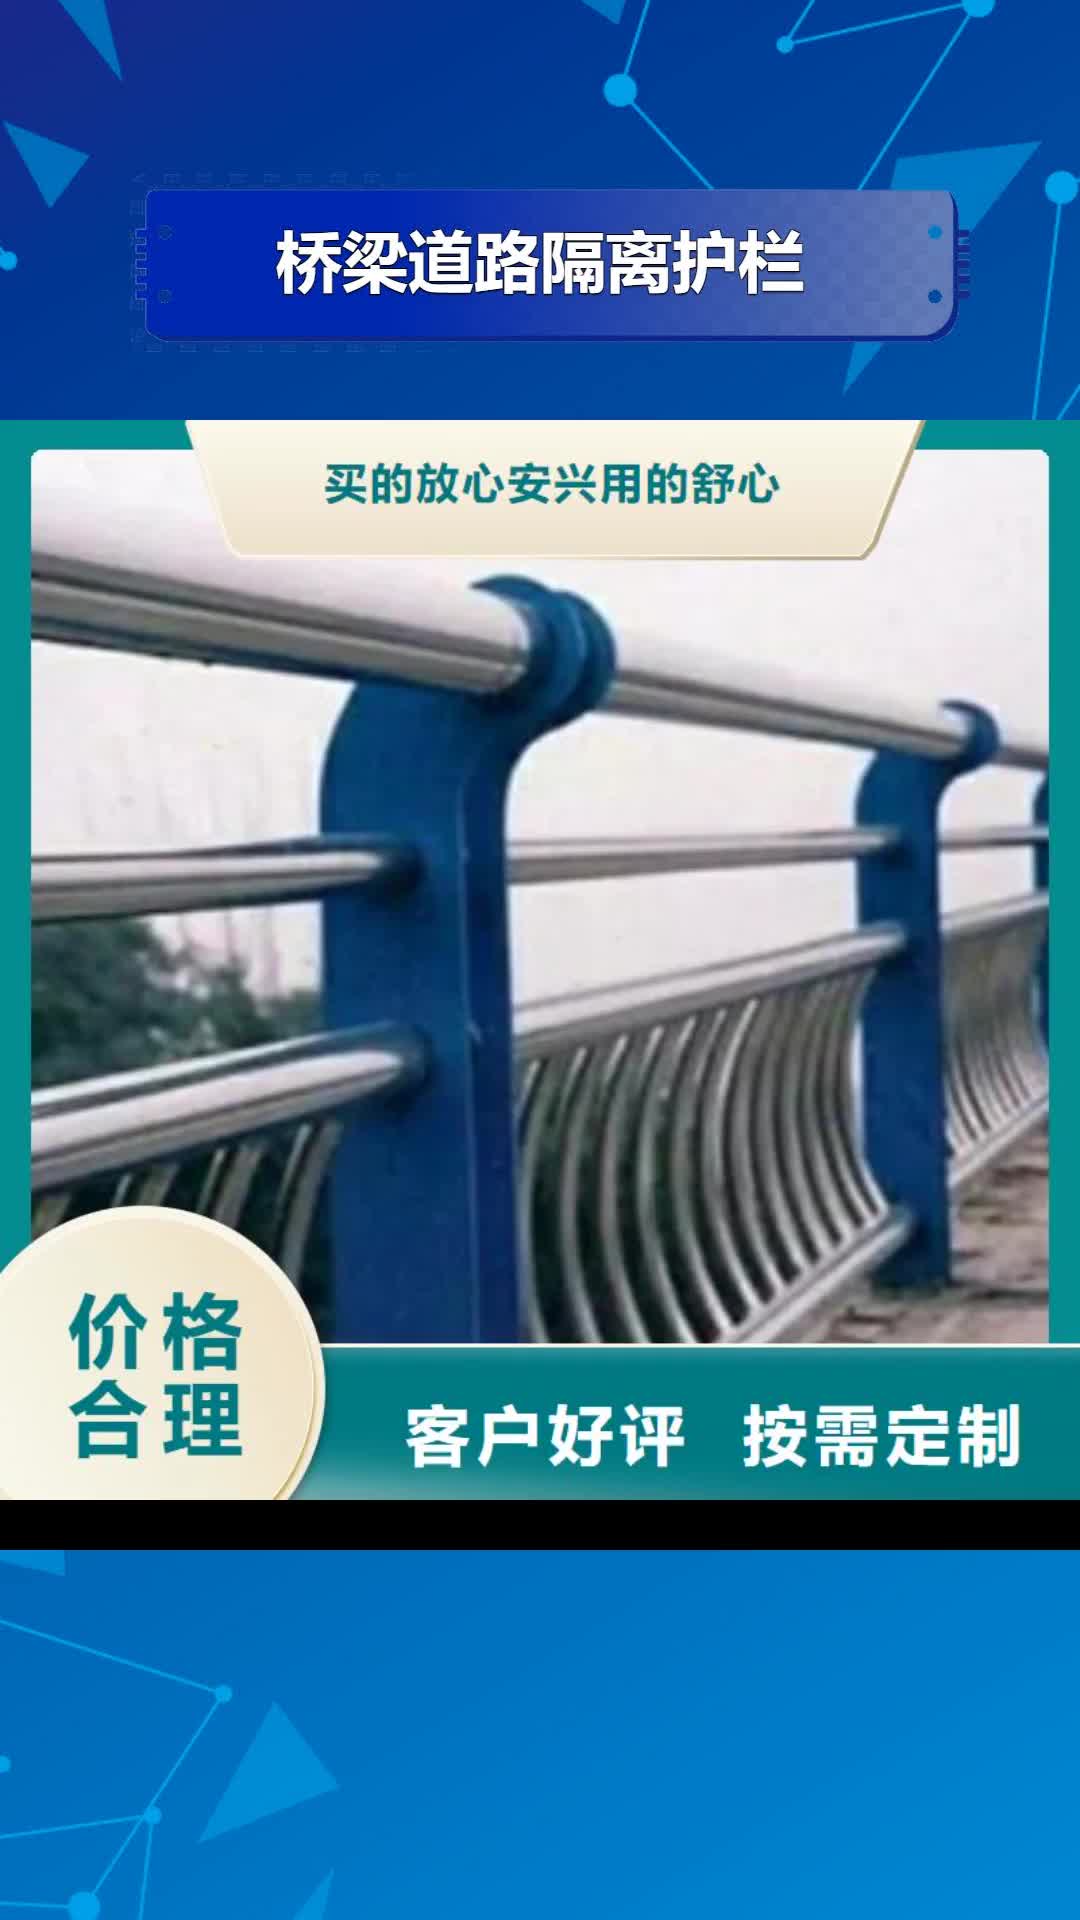 丽江【桥梁道路隔离护栏】 桥梁防撞护栏把实惠留给您